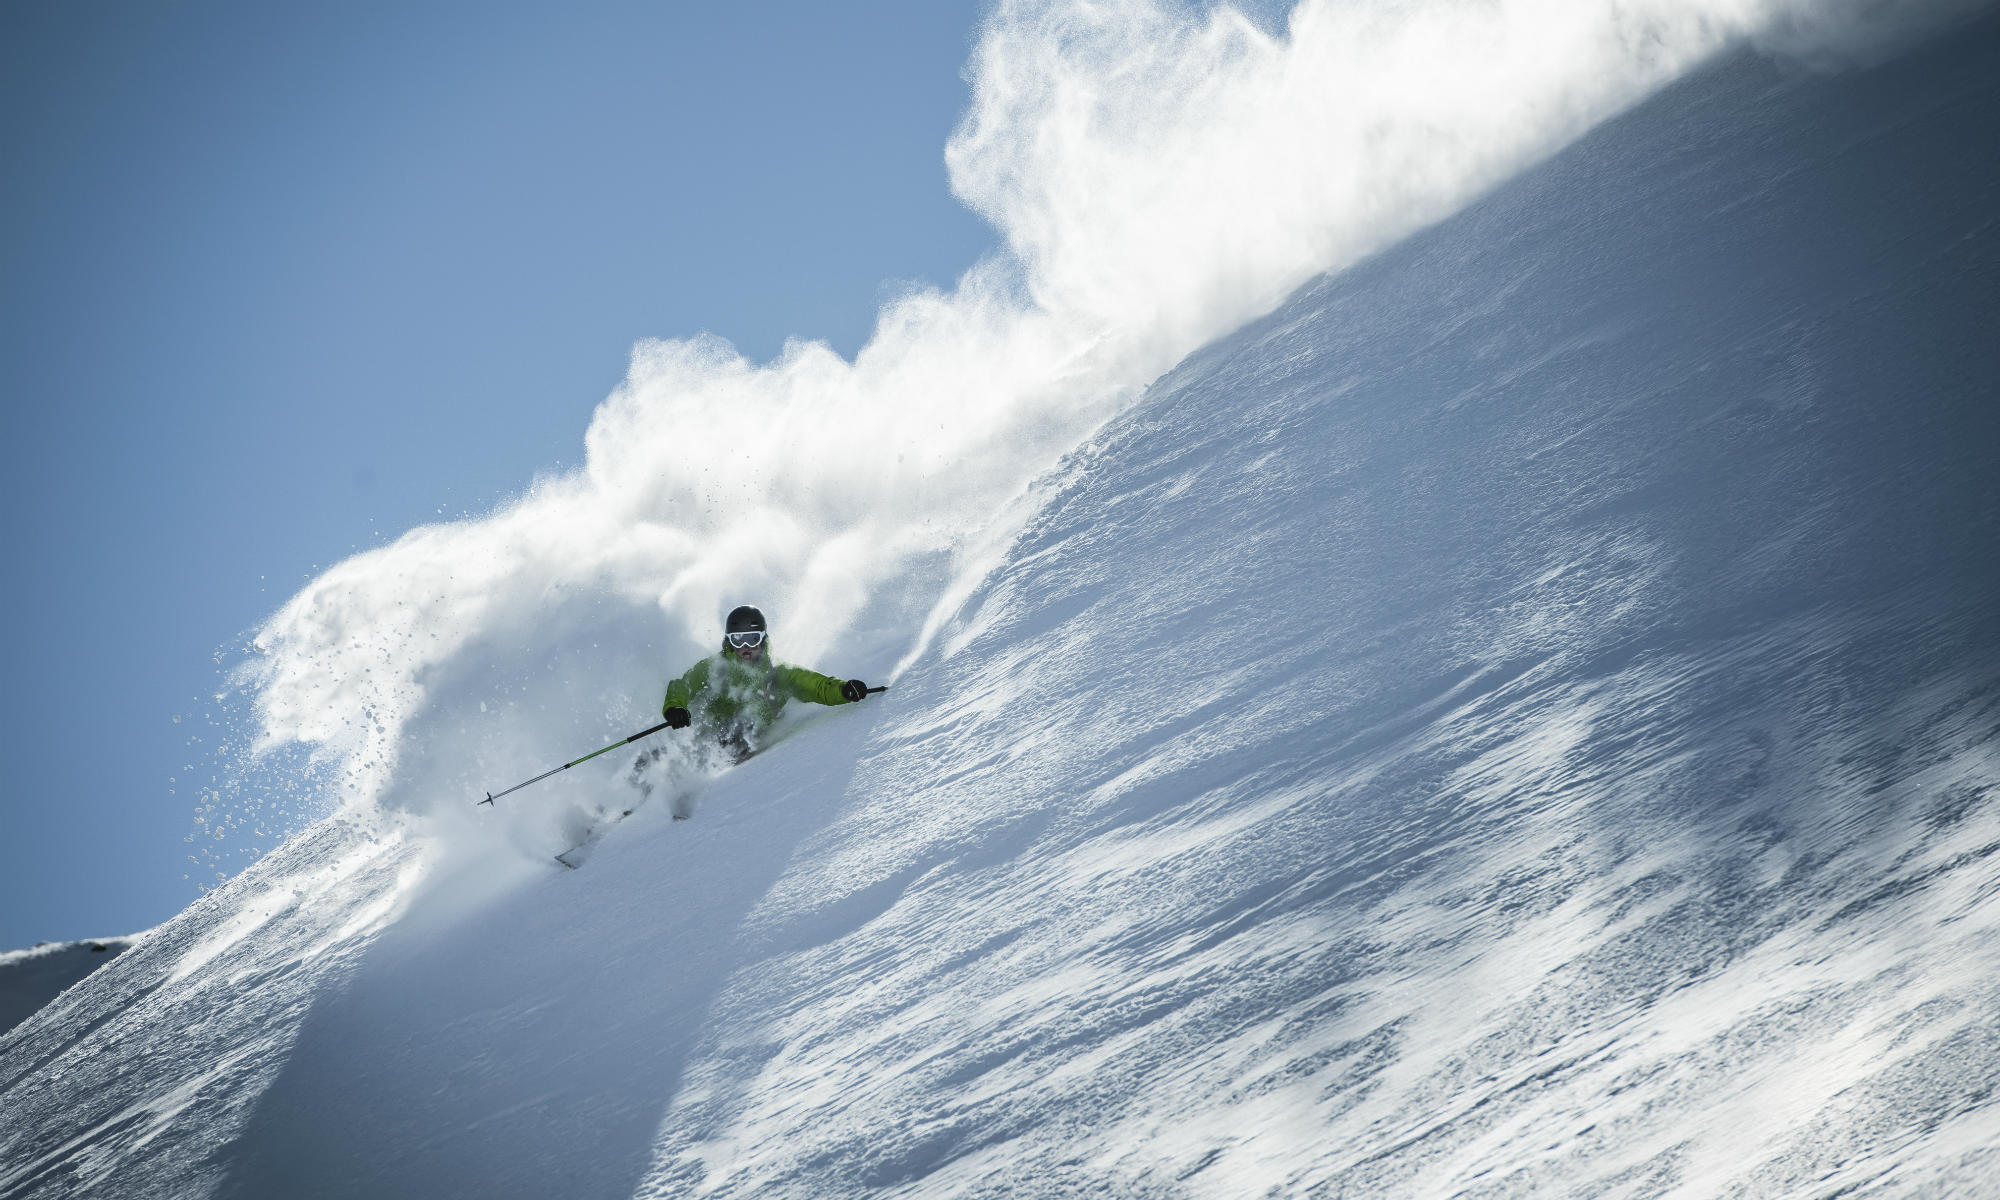 A freeride skier is skiing in deep powder snow.